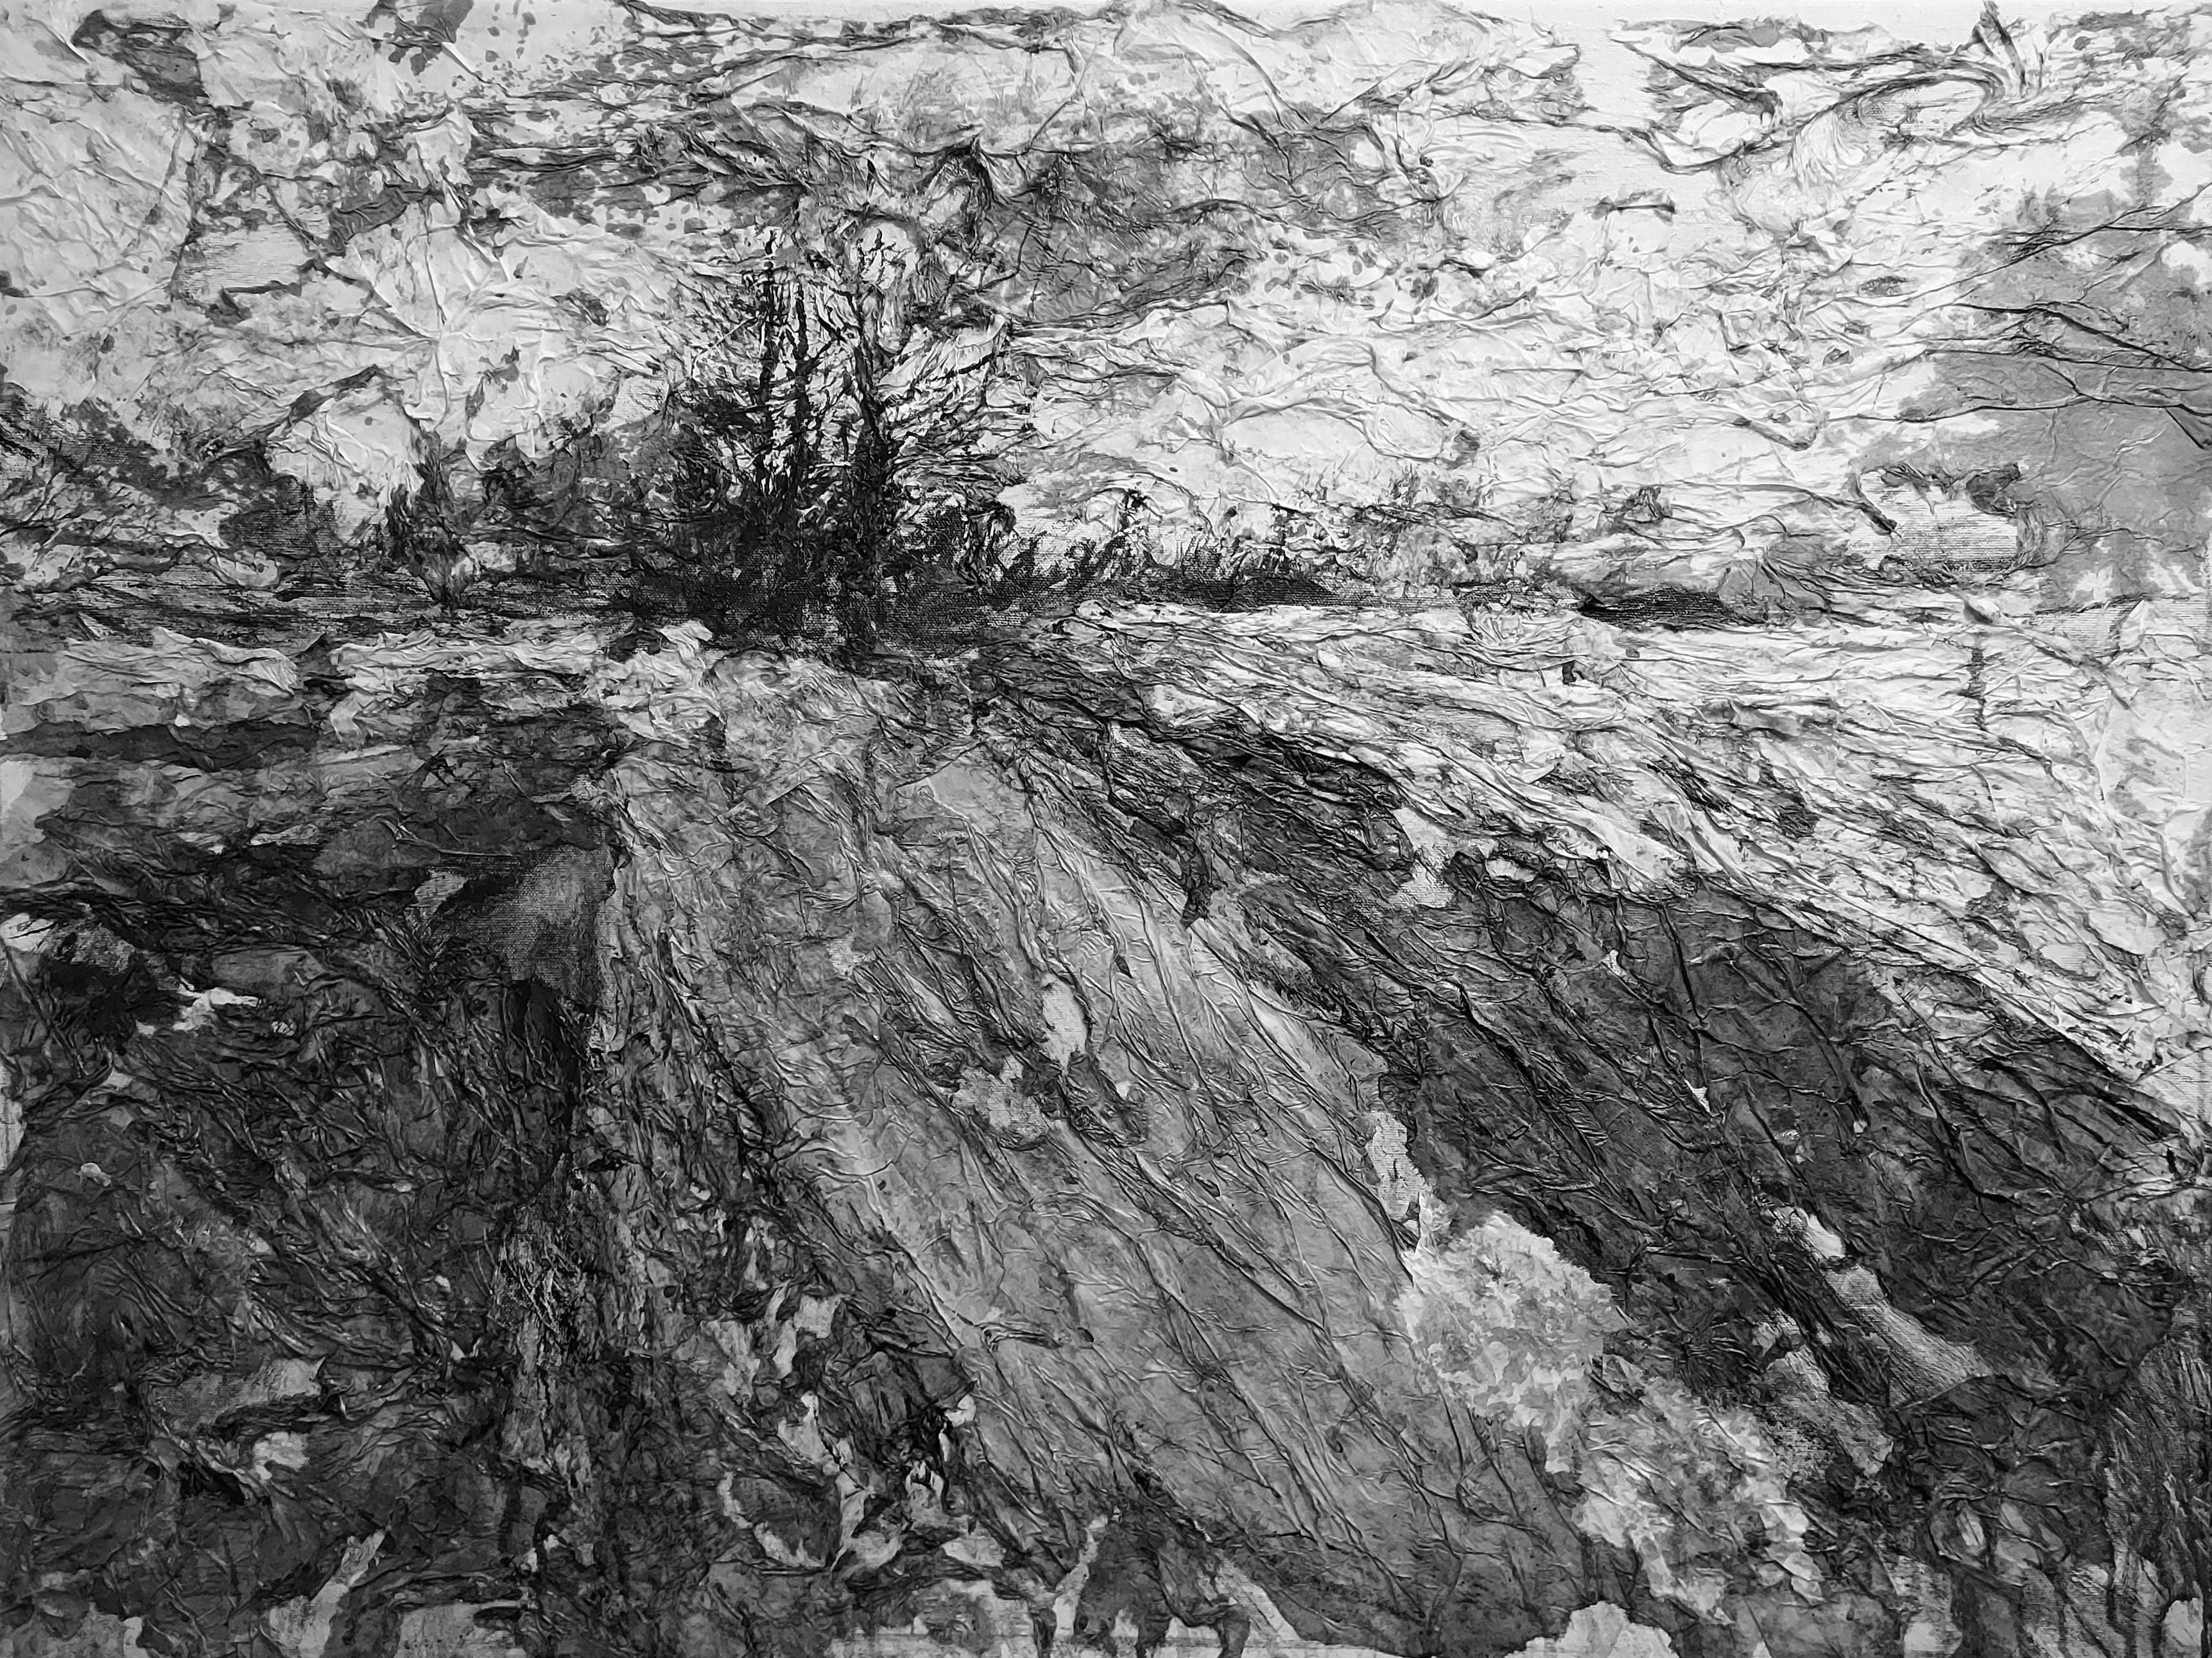 AsyaDodina SlavaPolishchuk Landscape Painting – Road XIII, monochrome Landschaft, Schwarz-Weiß und Grau